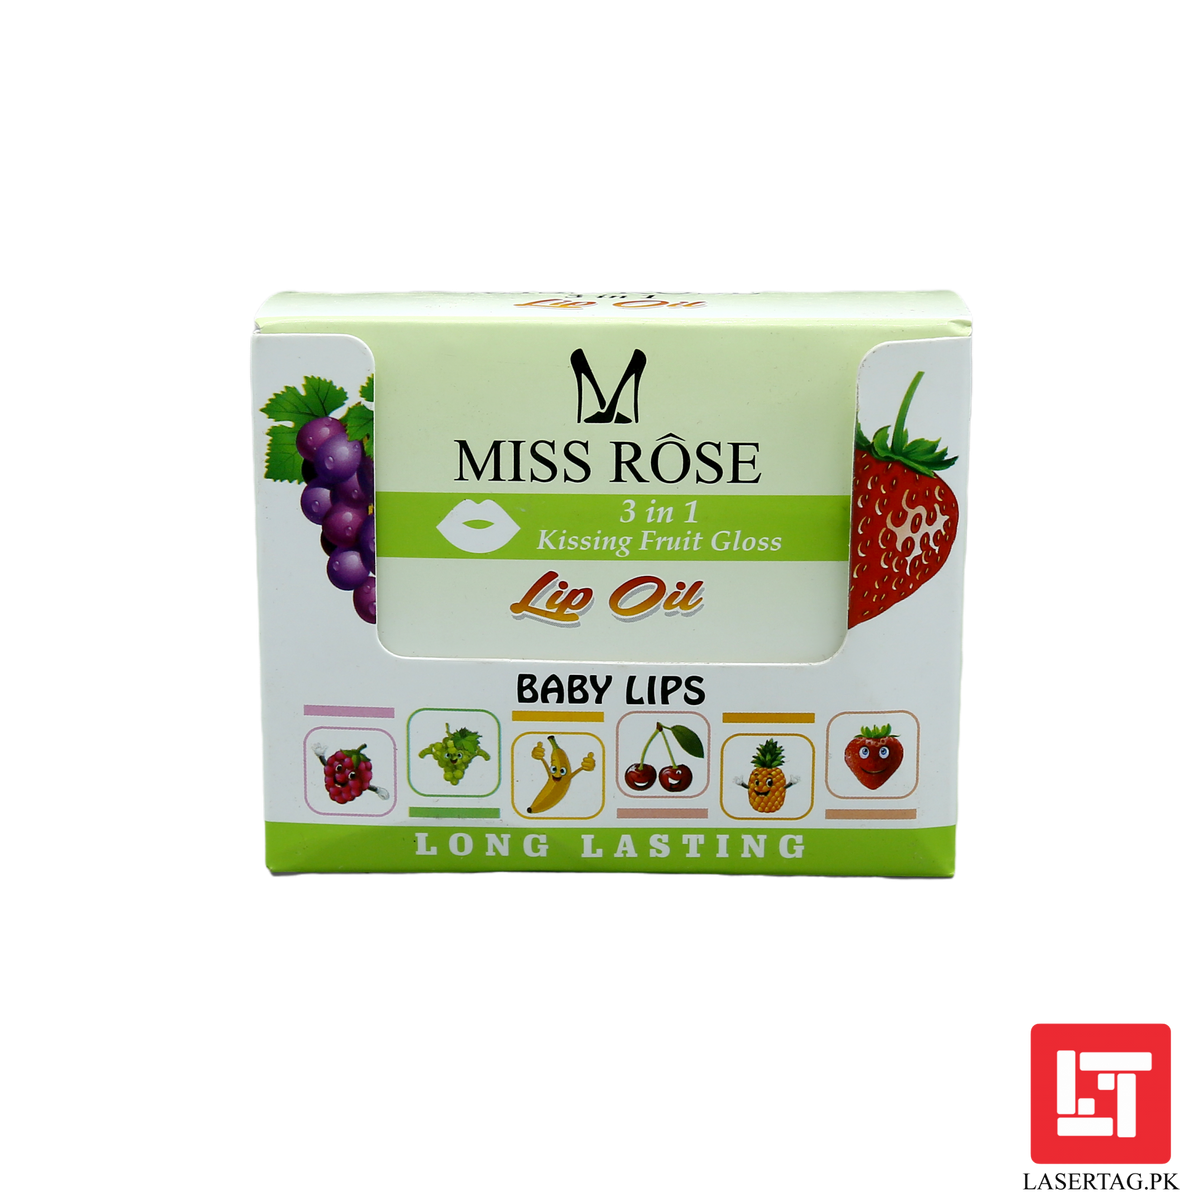 Miss Rose 3 In 1 Kissing Fruit Gloss Lip Oil 5ml freeshipping - lasertag.pk